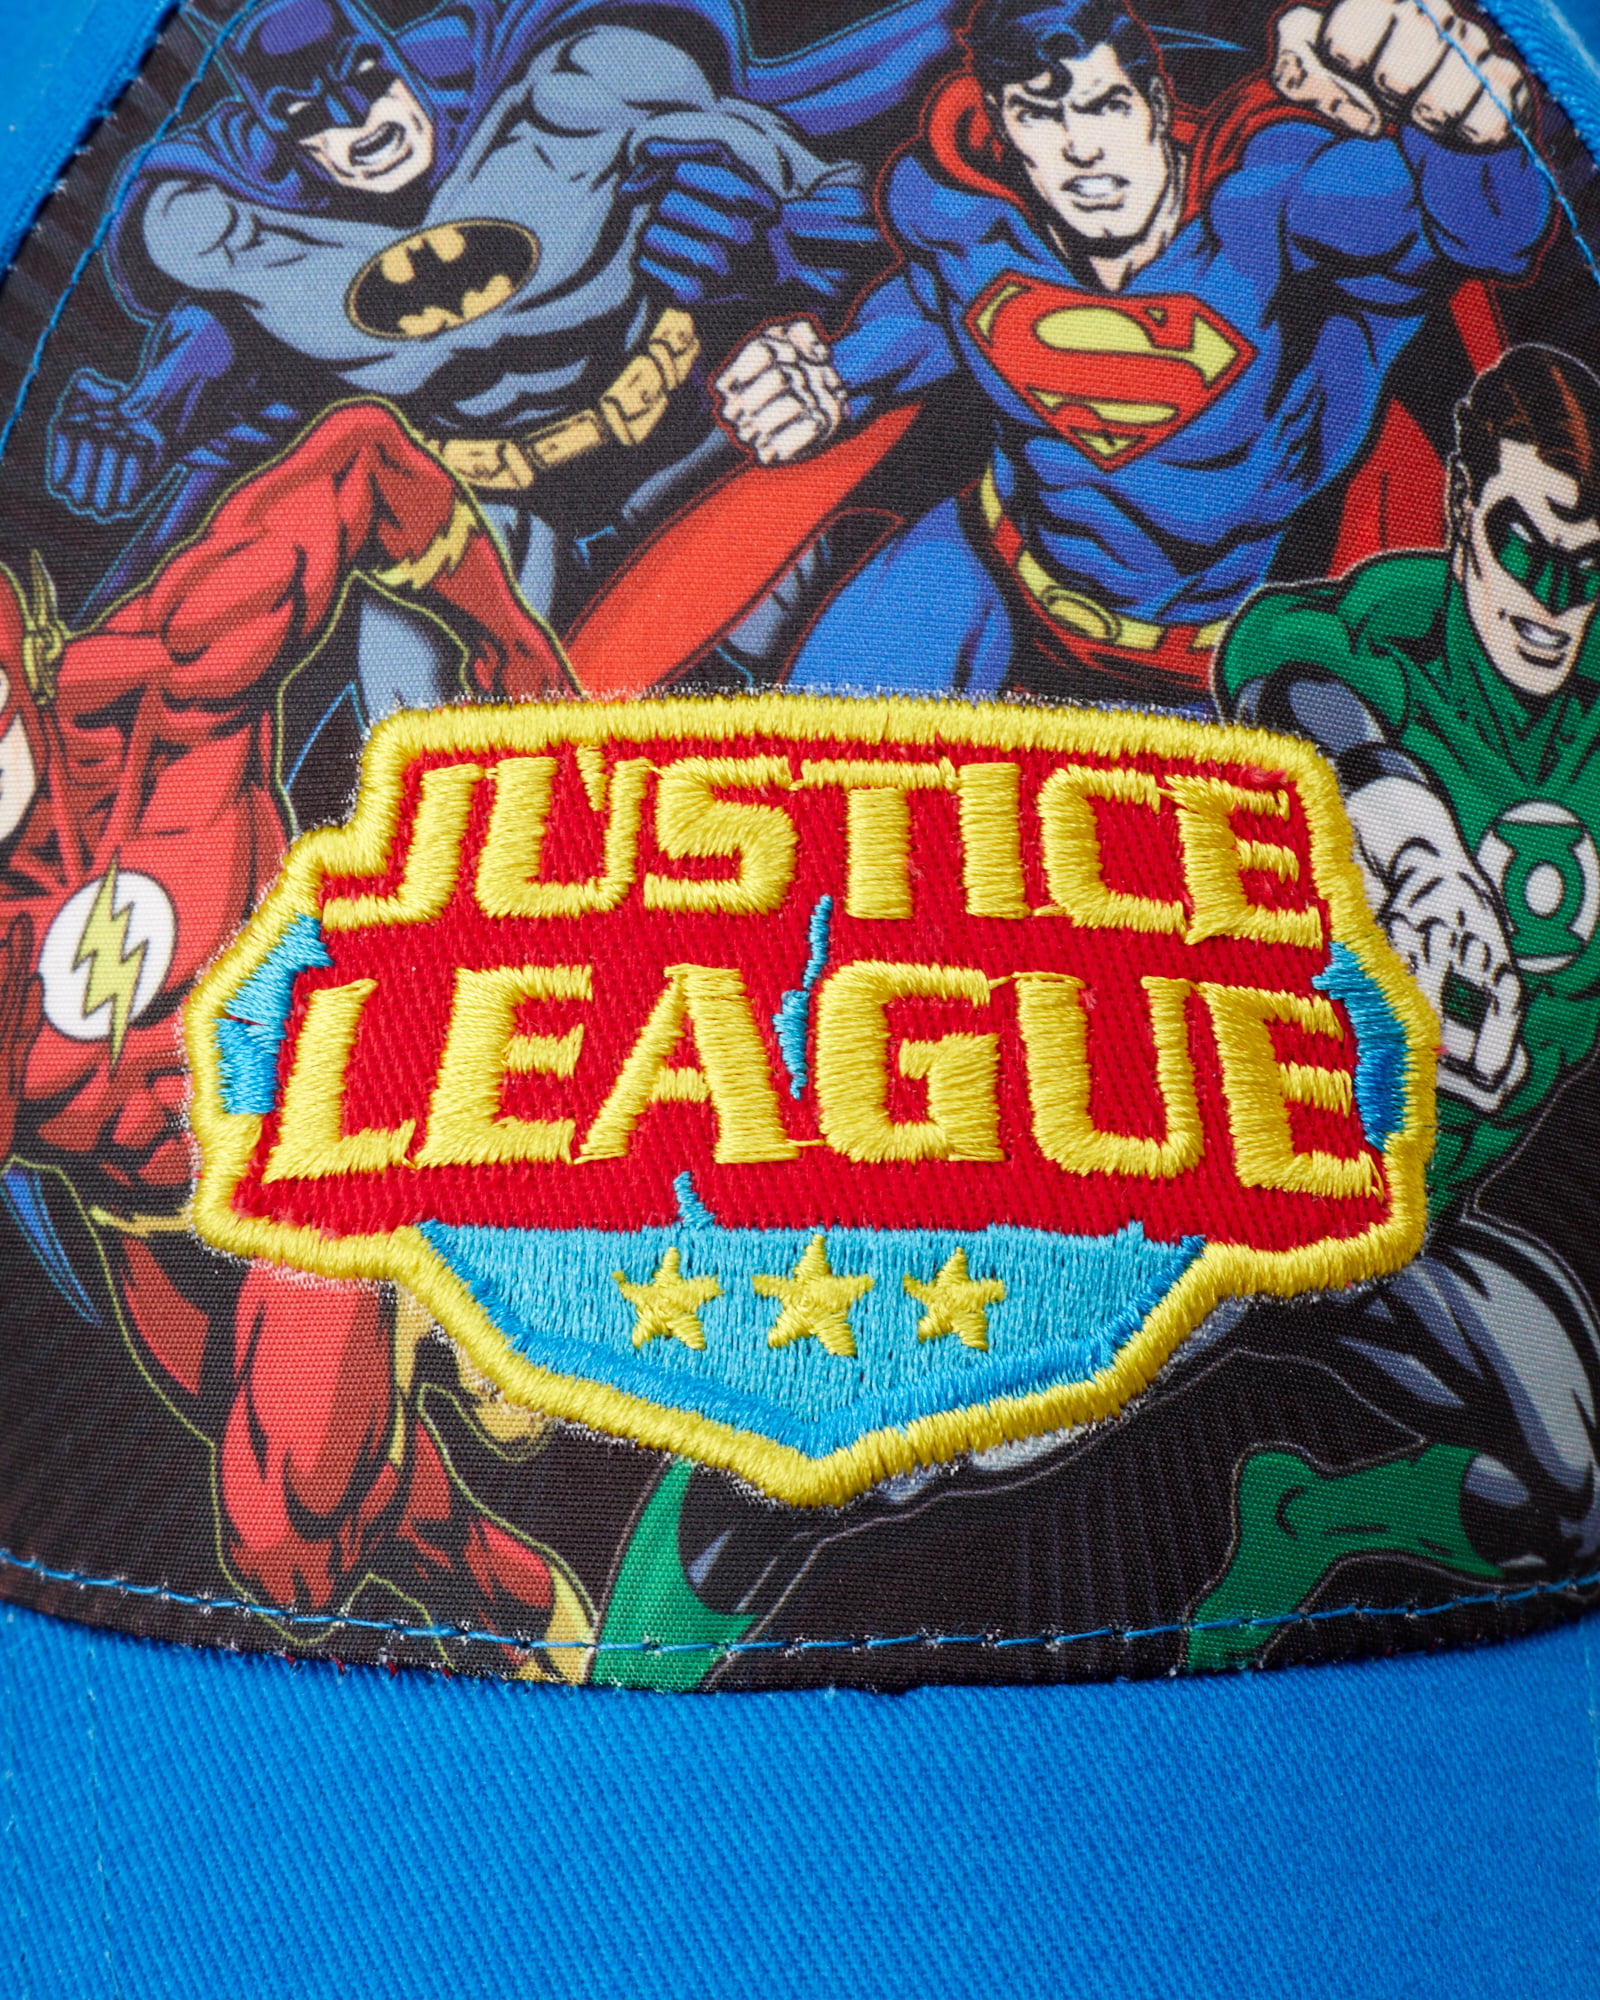 DC Comics Boys' Super Hero Baseball Cap - 3D Superman, Batman, Justice  League Hat (2T-7)